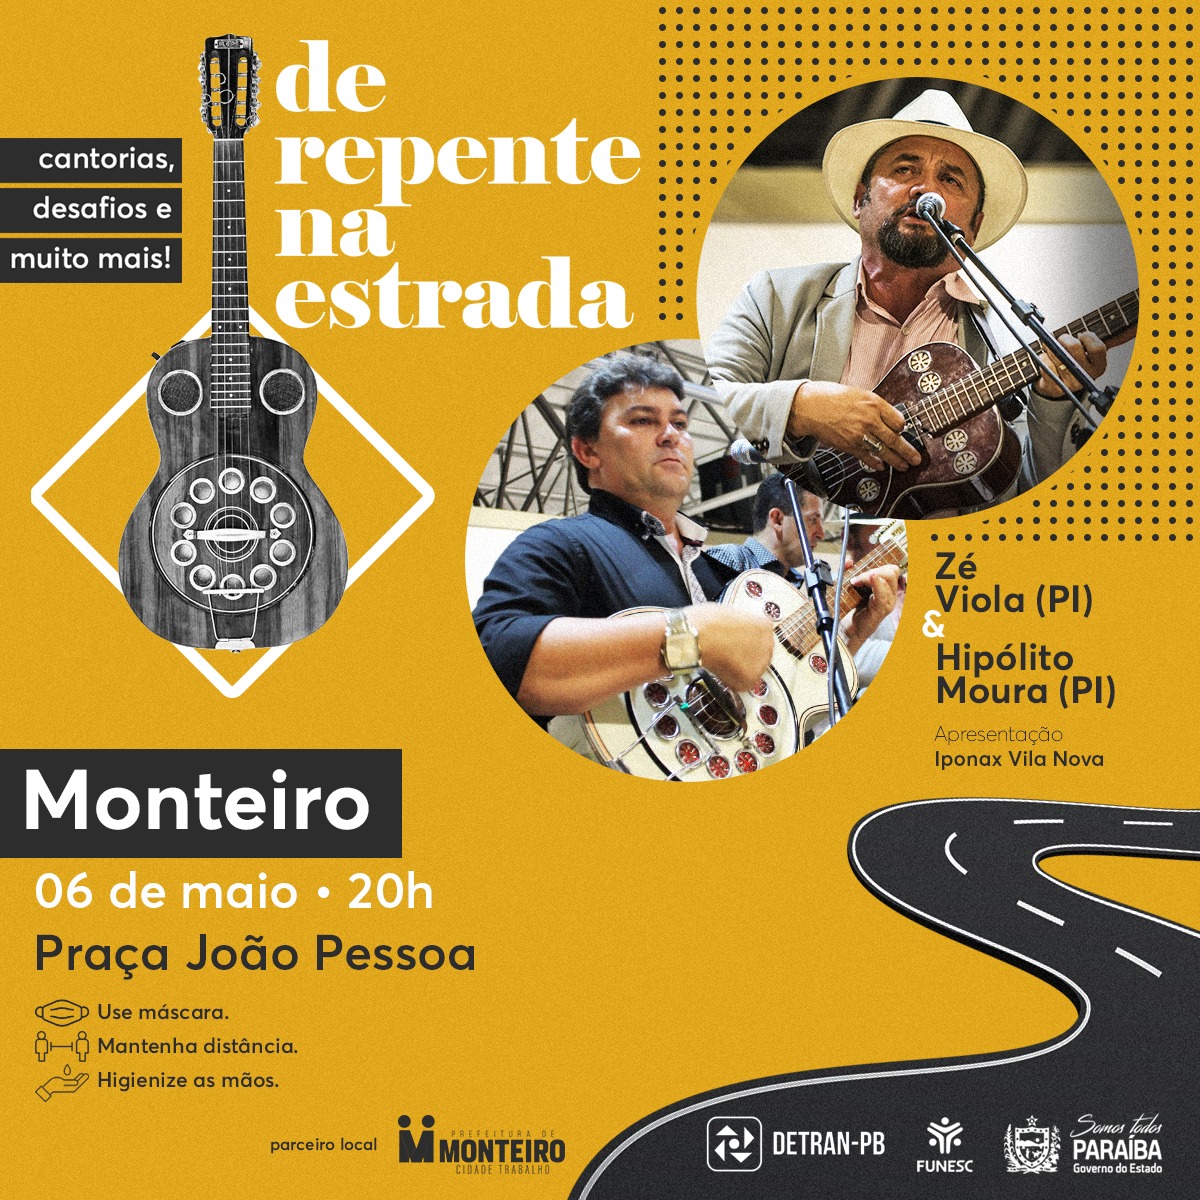 CANTORIA DE VIOLA: Monteiro recebe projeto “De Repente na Estrada” com show de Zé Viola e Hipólito Moura